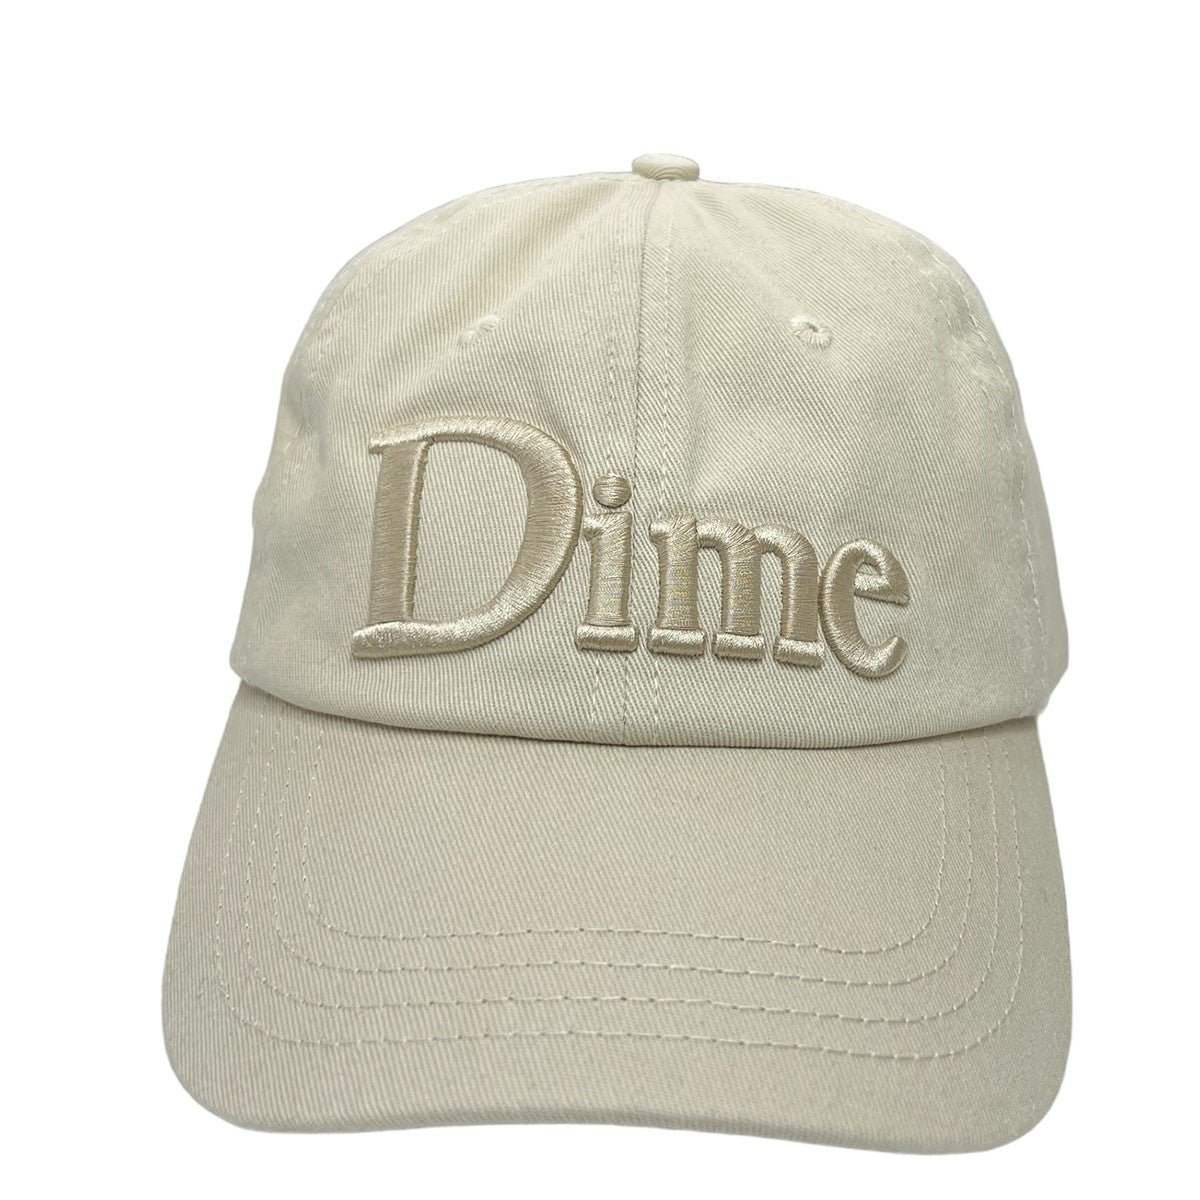 Dime(ダイム) Classic 3D Cap ロゴ刺繍キャップ ベージュ サイズ 11 